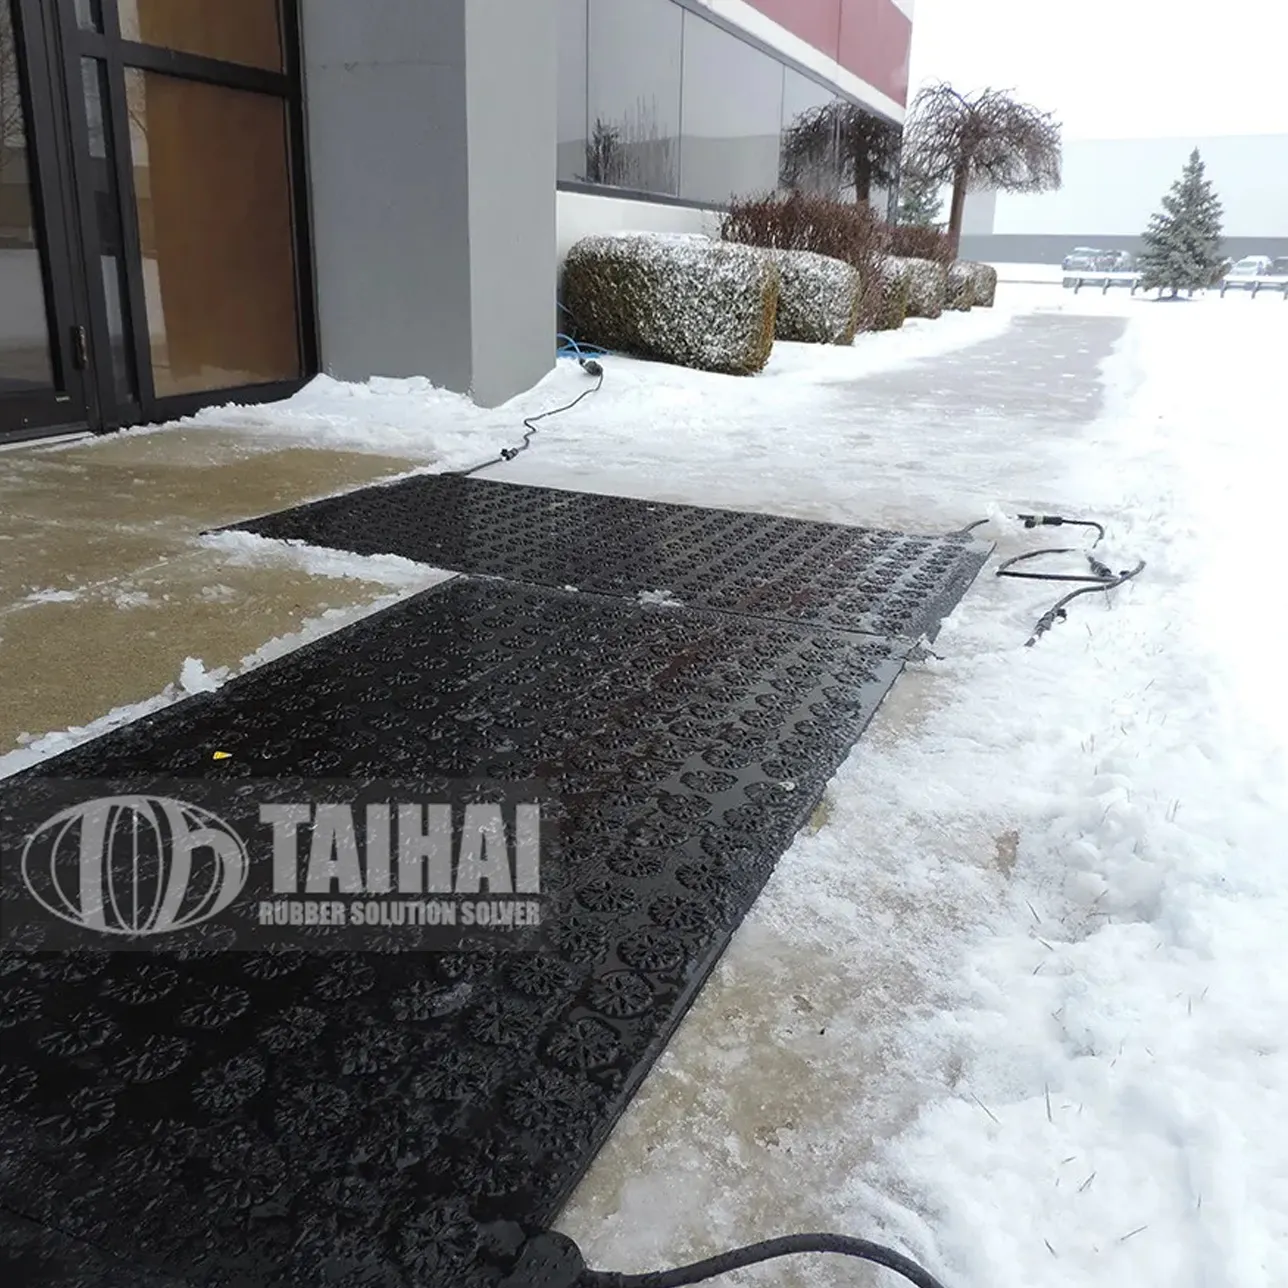 Прочие резиновые изделия, коврик с подогревом в виде снежинок для дорожной дороги/подъездной дорожки, Противоскользящий коврик для таяния снега 32x56 дюймов